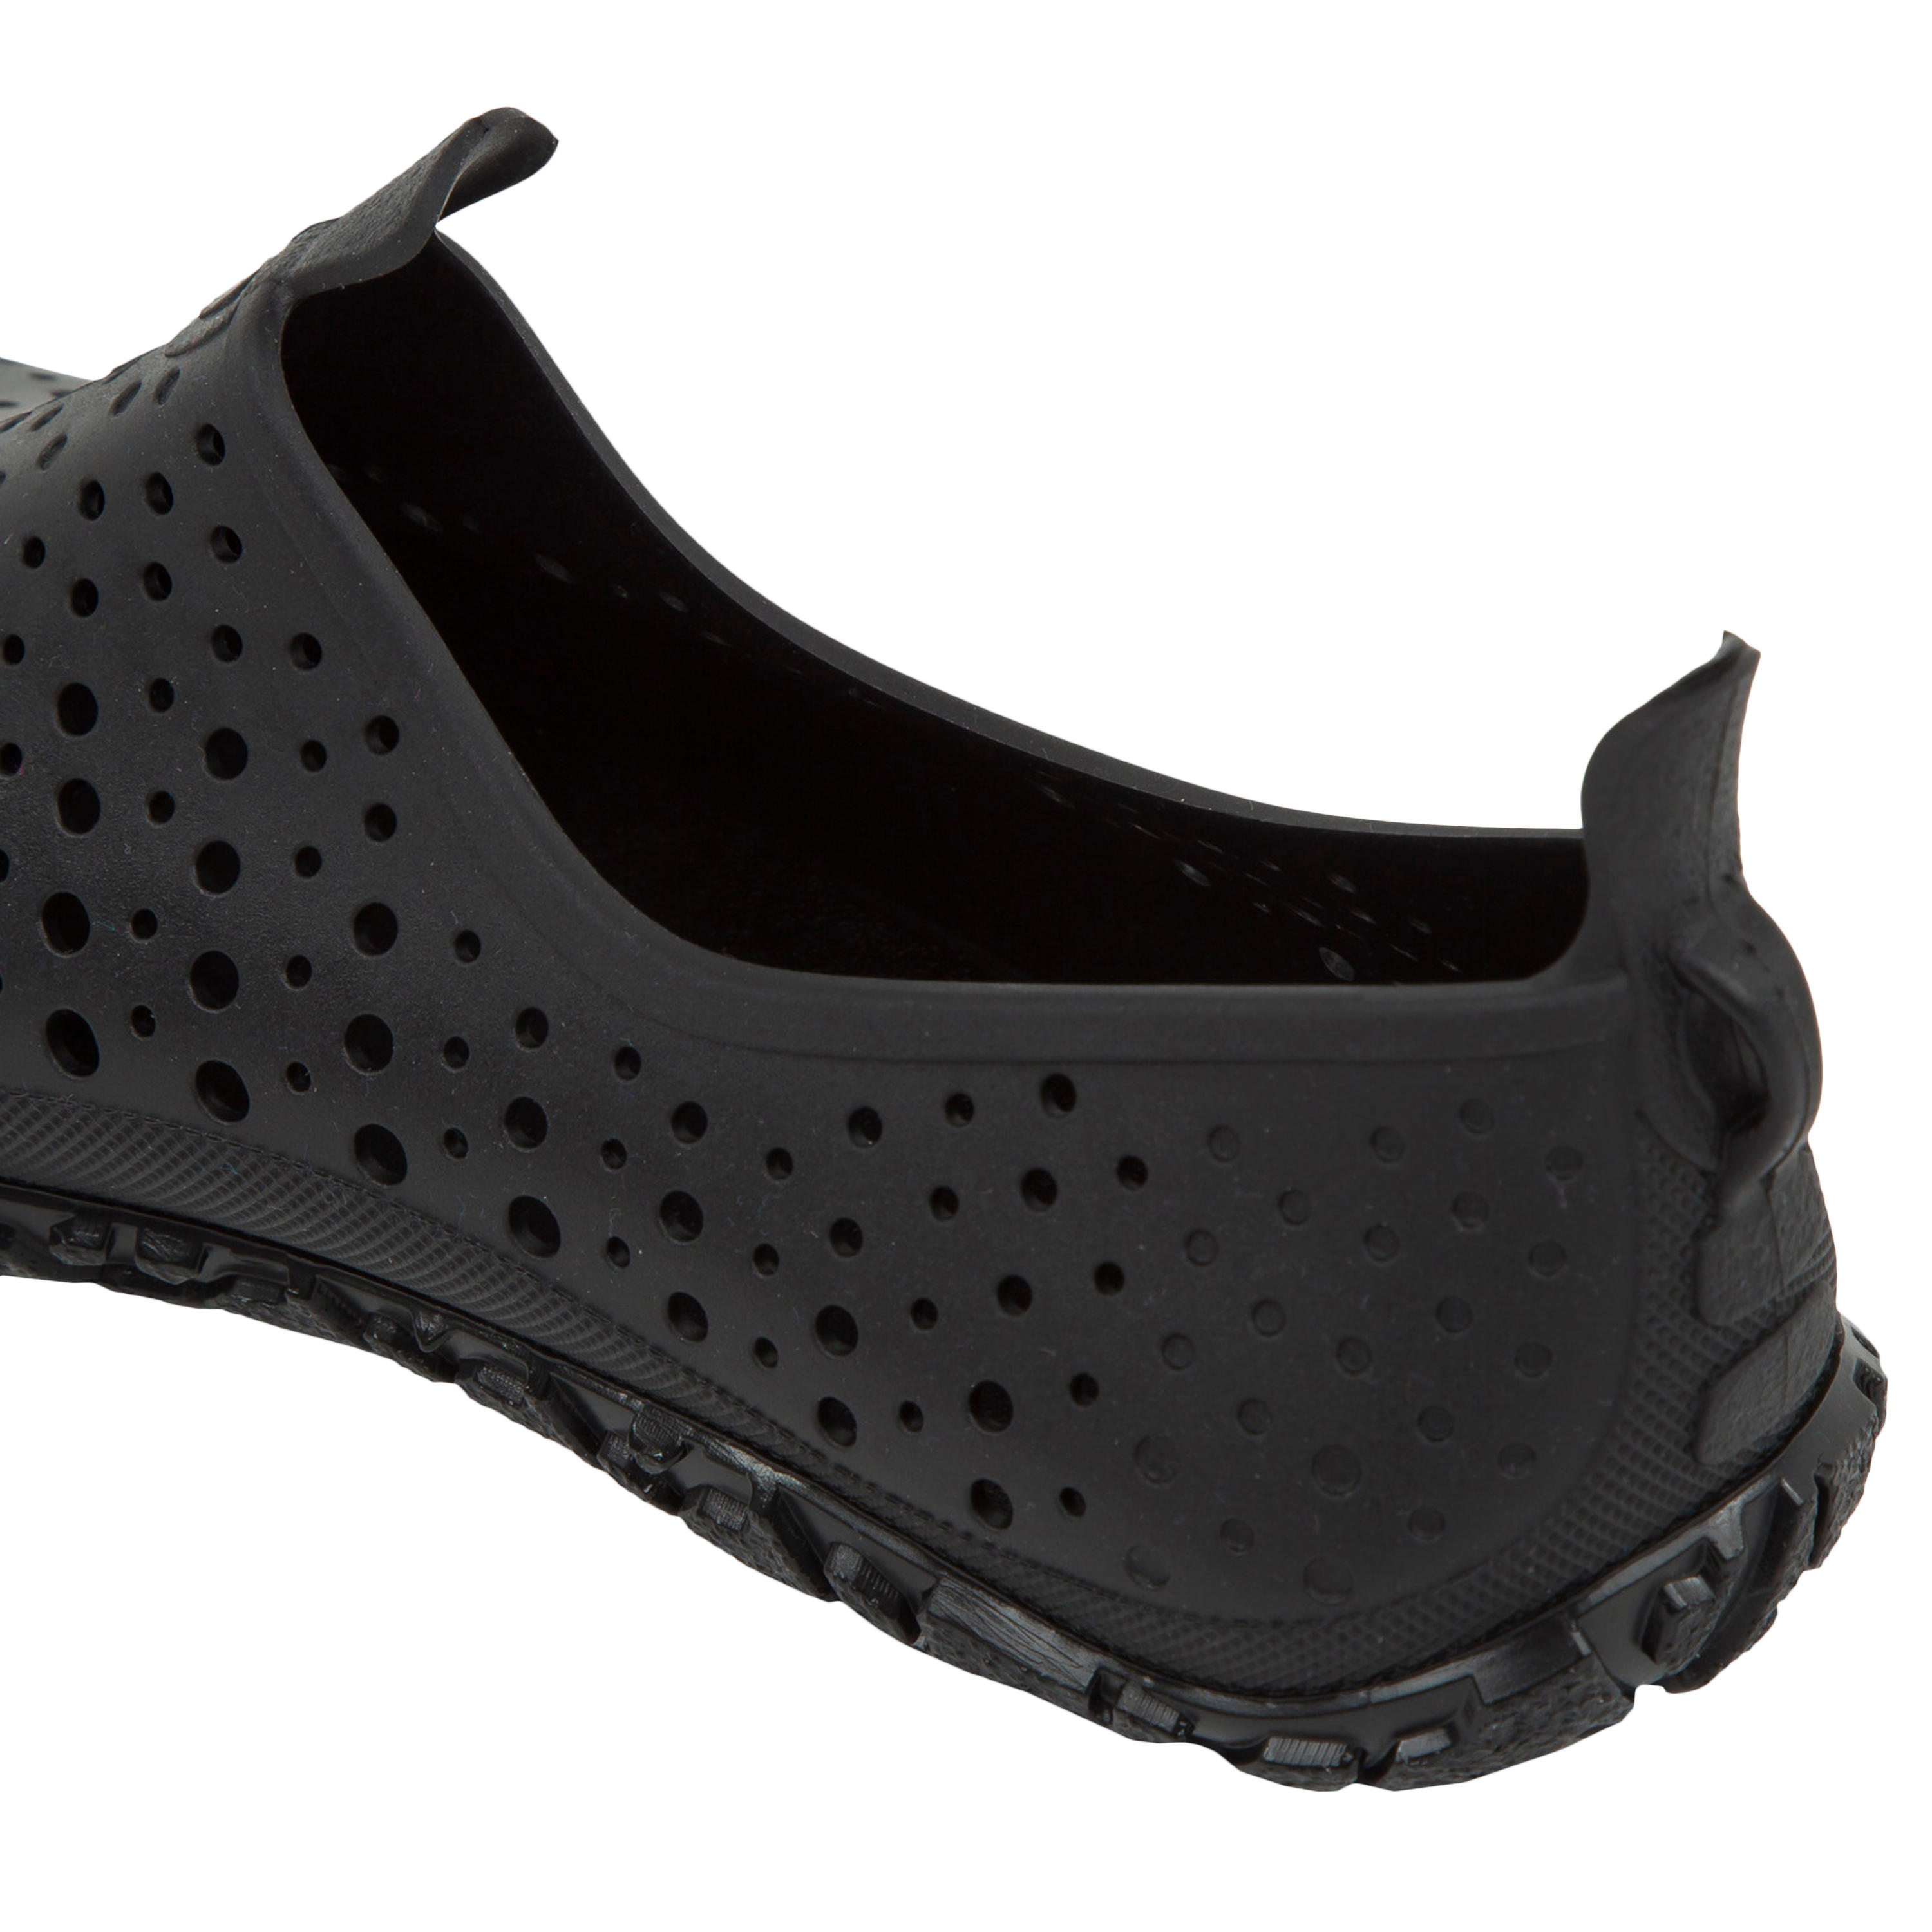 Aquabiking-Aquafit Water Shoes Aquadots Black 4/6